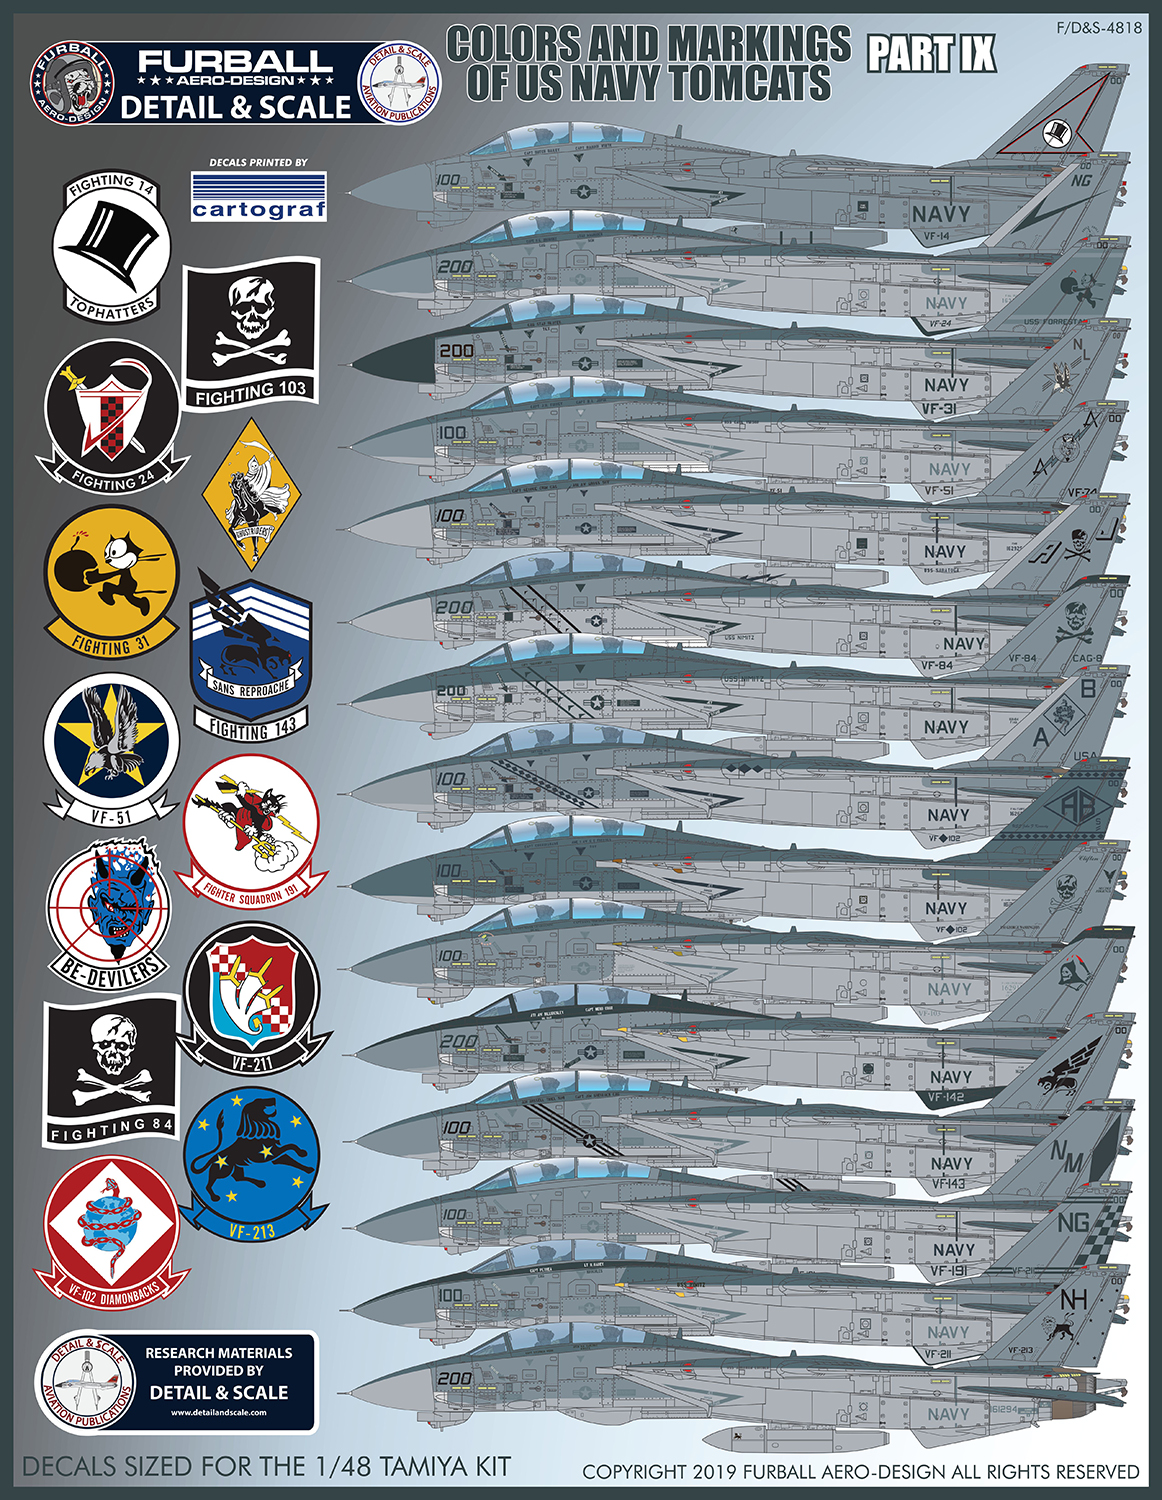 1/48 アメリカ海軍 F-14トムキャット カラー&マーキング パート9"ロービジ・CAG"